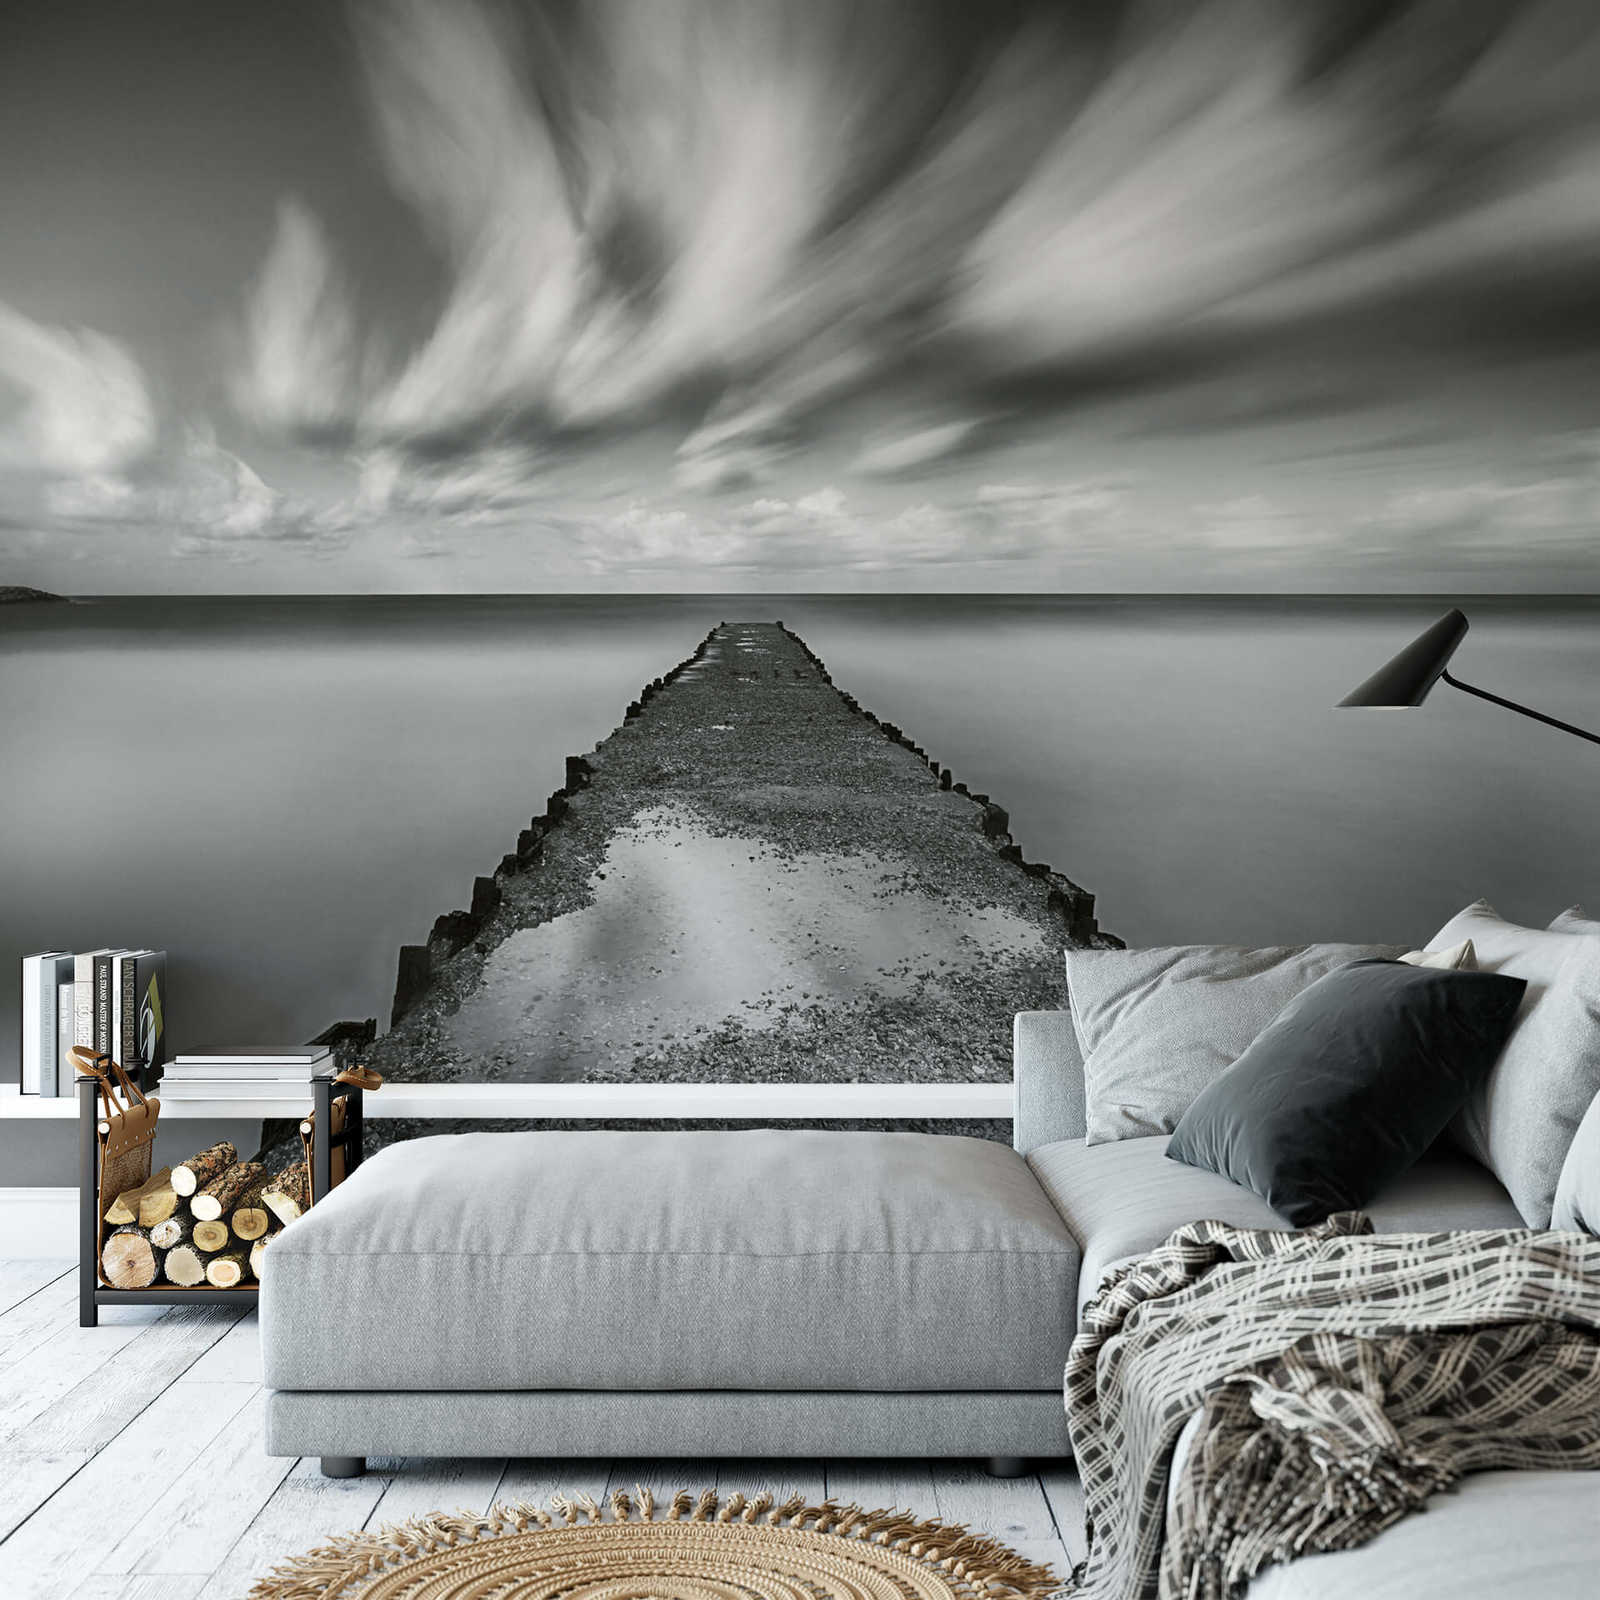             Mare con molo murale - Nero, bianco, grigio
        